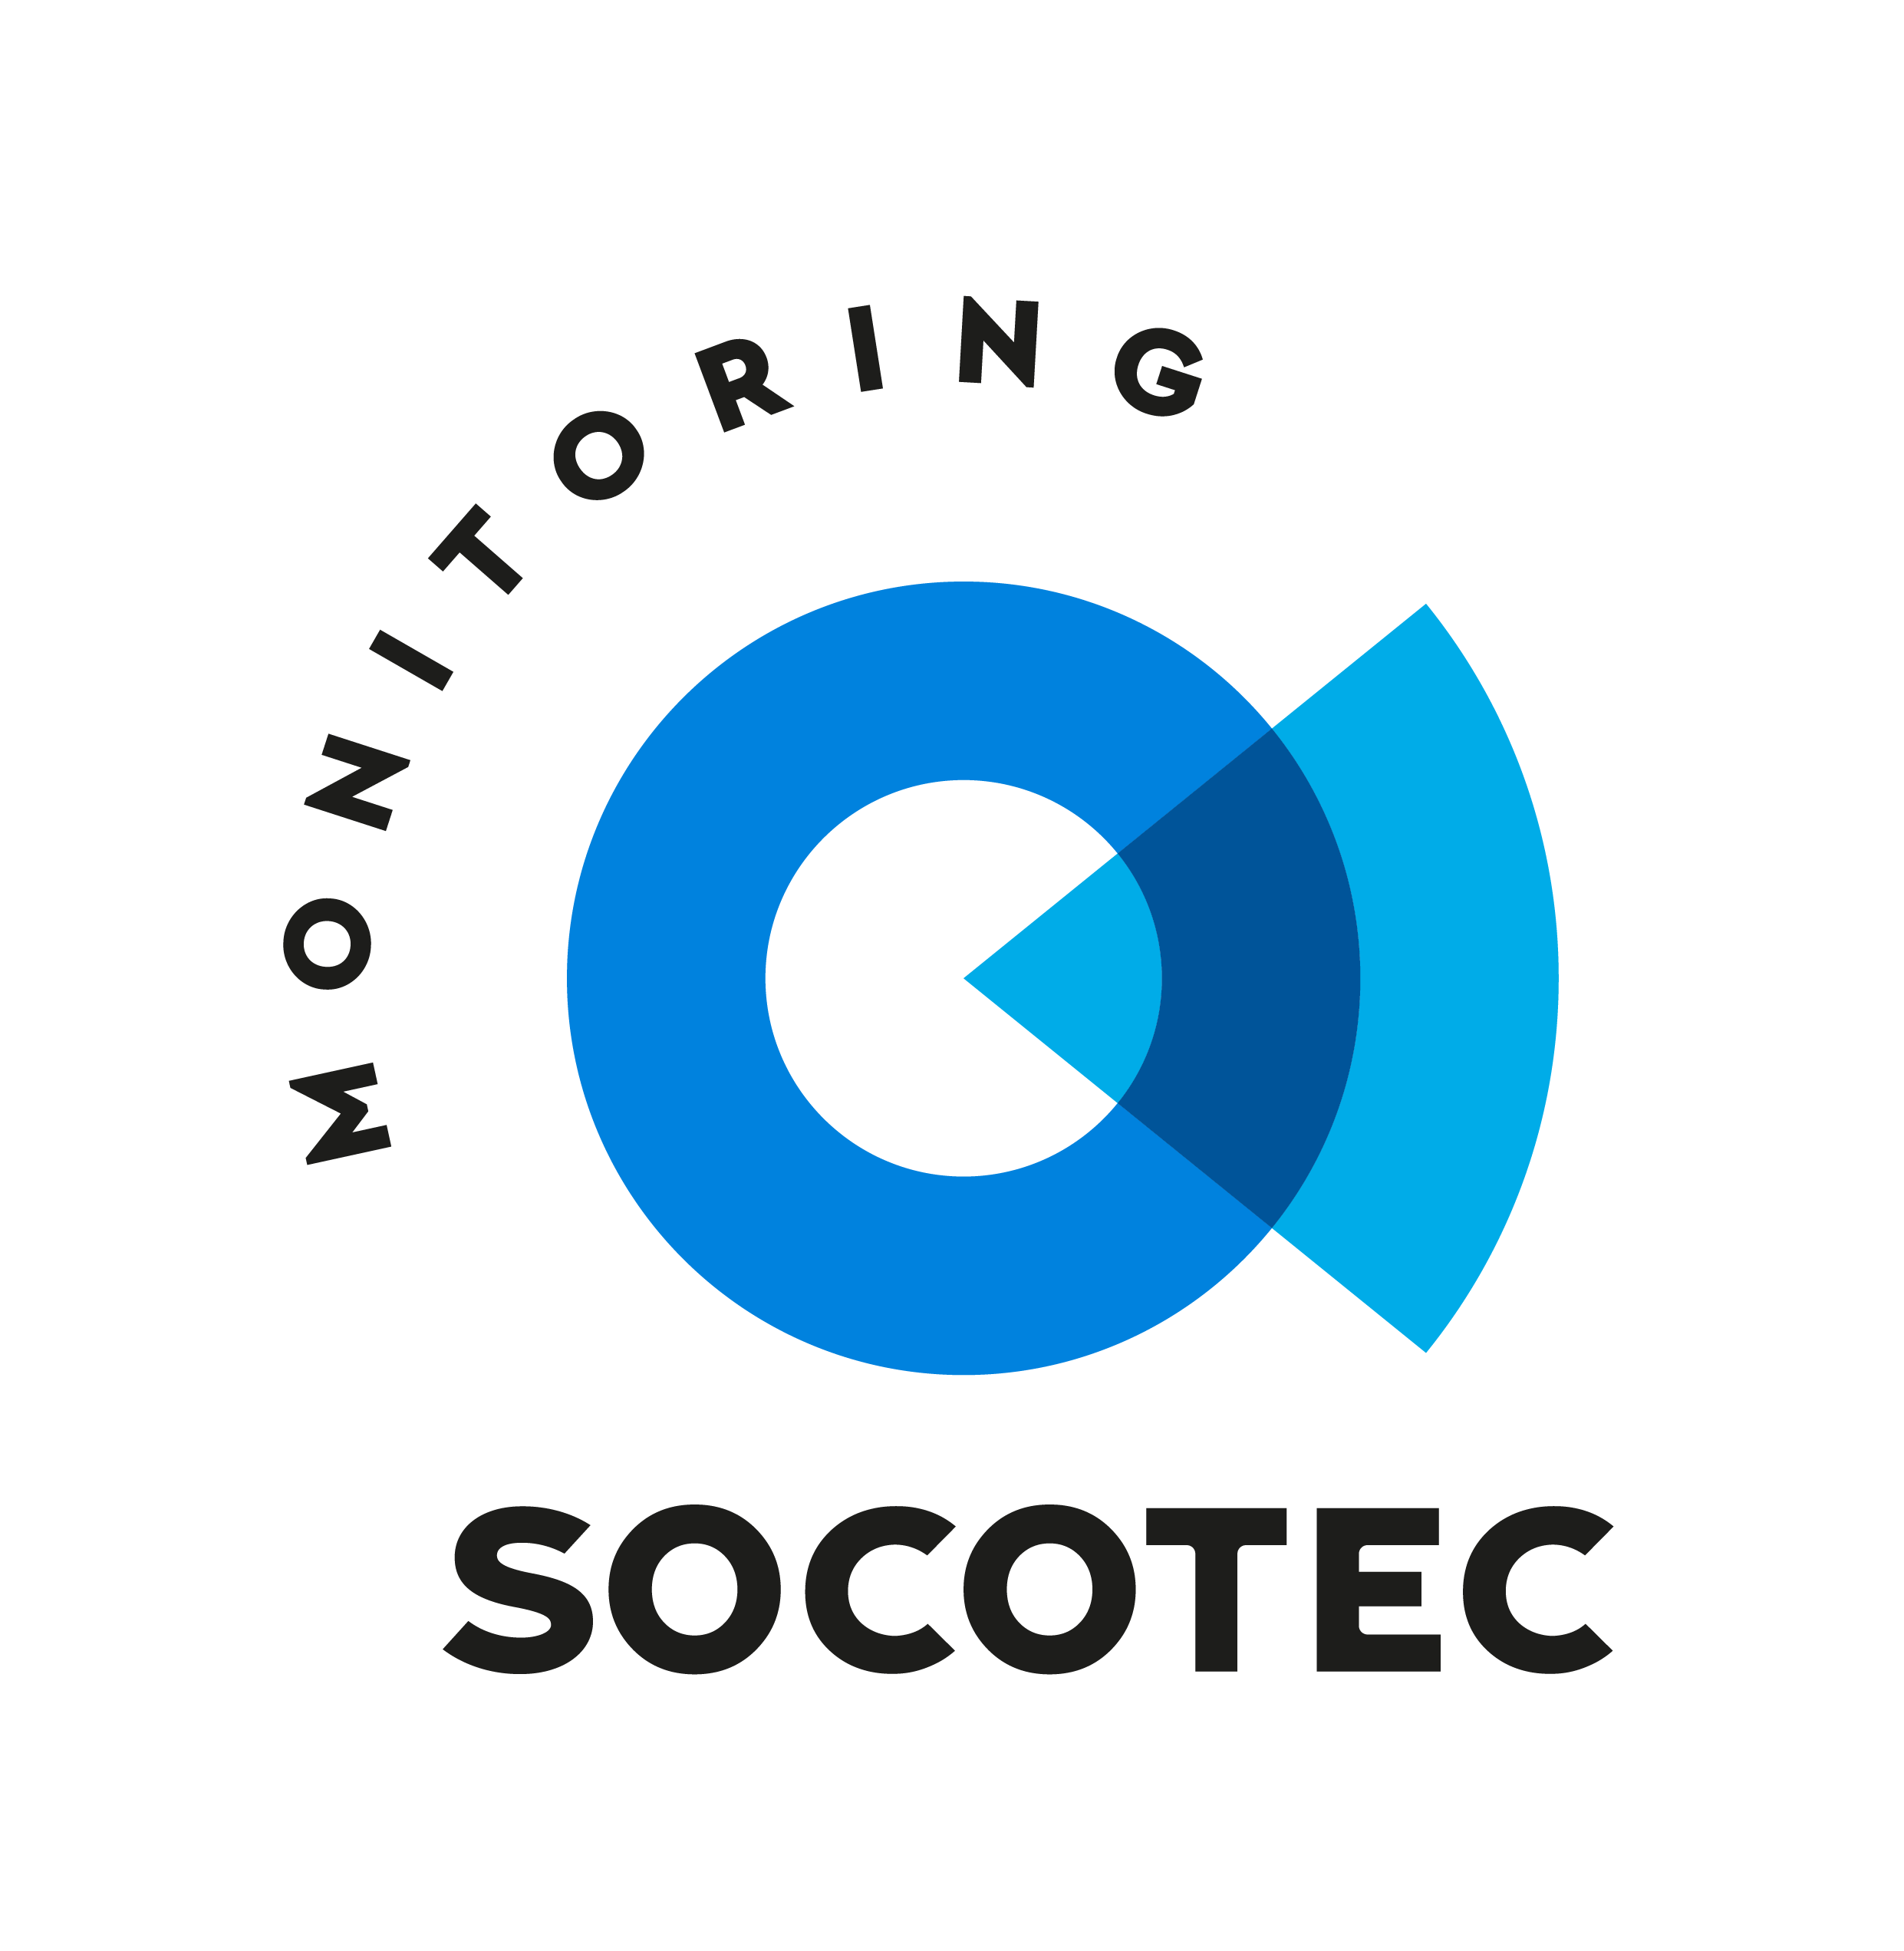 Socotec Monitoring se classe à la 1ère place du challenge international “Inspection 4.0 des infrastructures” pour son projet SOFIA